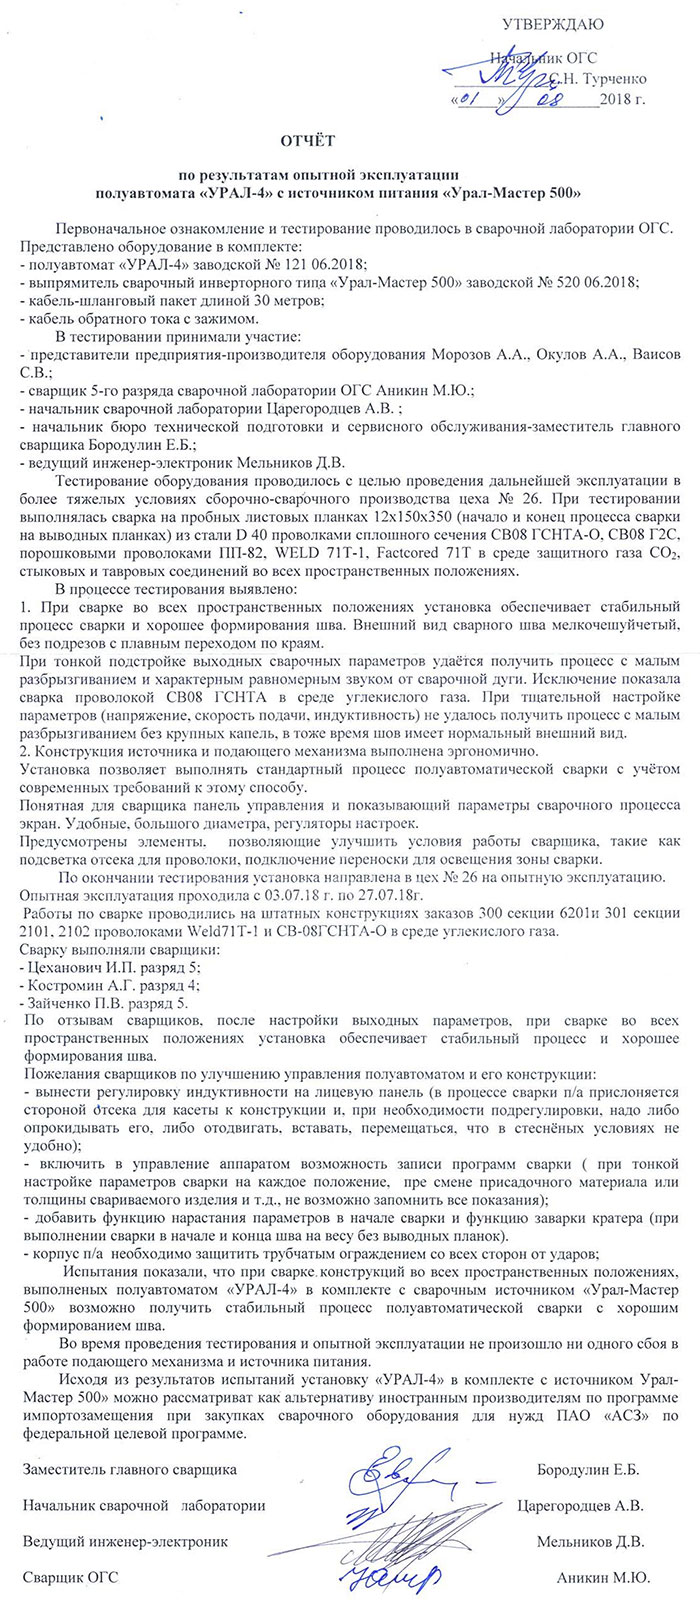 ПАО «Амурский судостроительный завод» о работе УРАЛ Мастер 500 с УРАЛ-4. август 2018